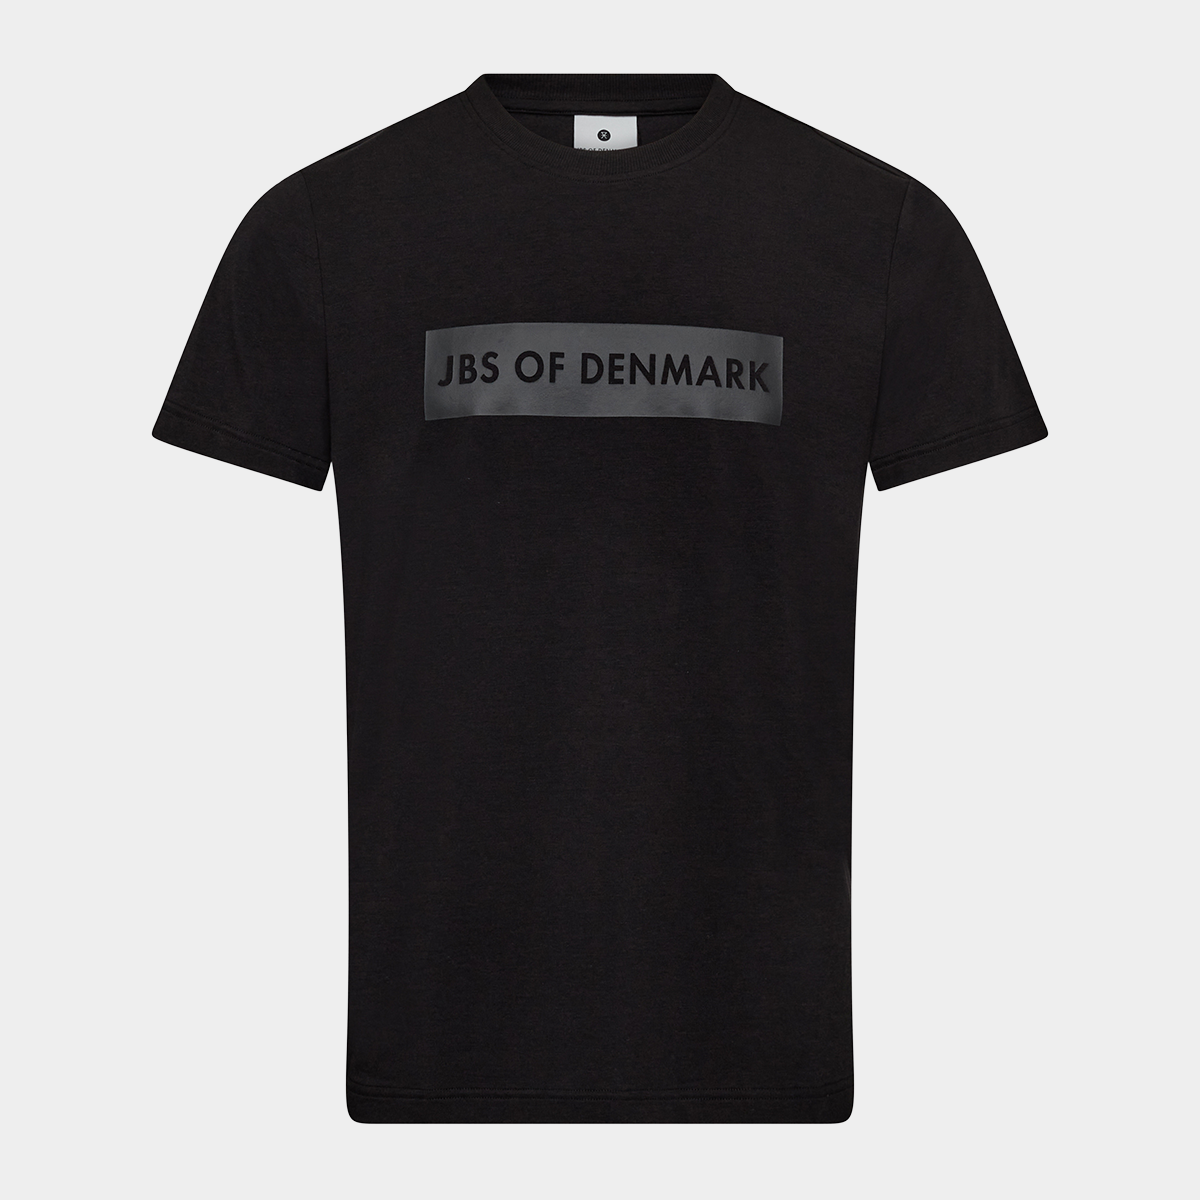 Billede af Sort bambus T-shirt med logo fra JBS of Denmark, S hos Bambustøj.dk